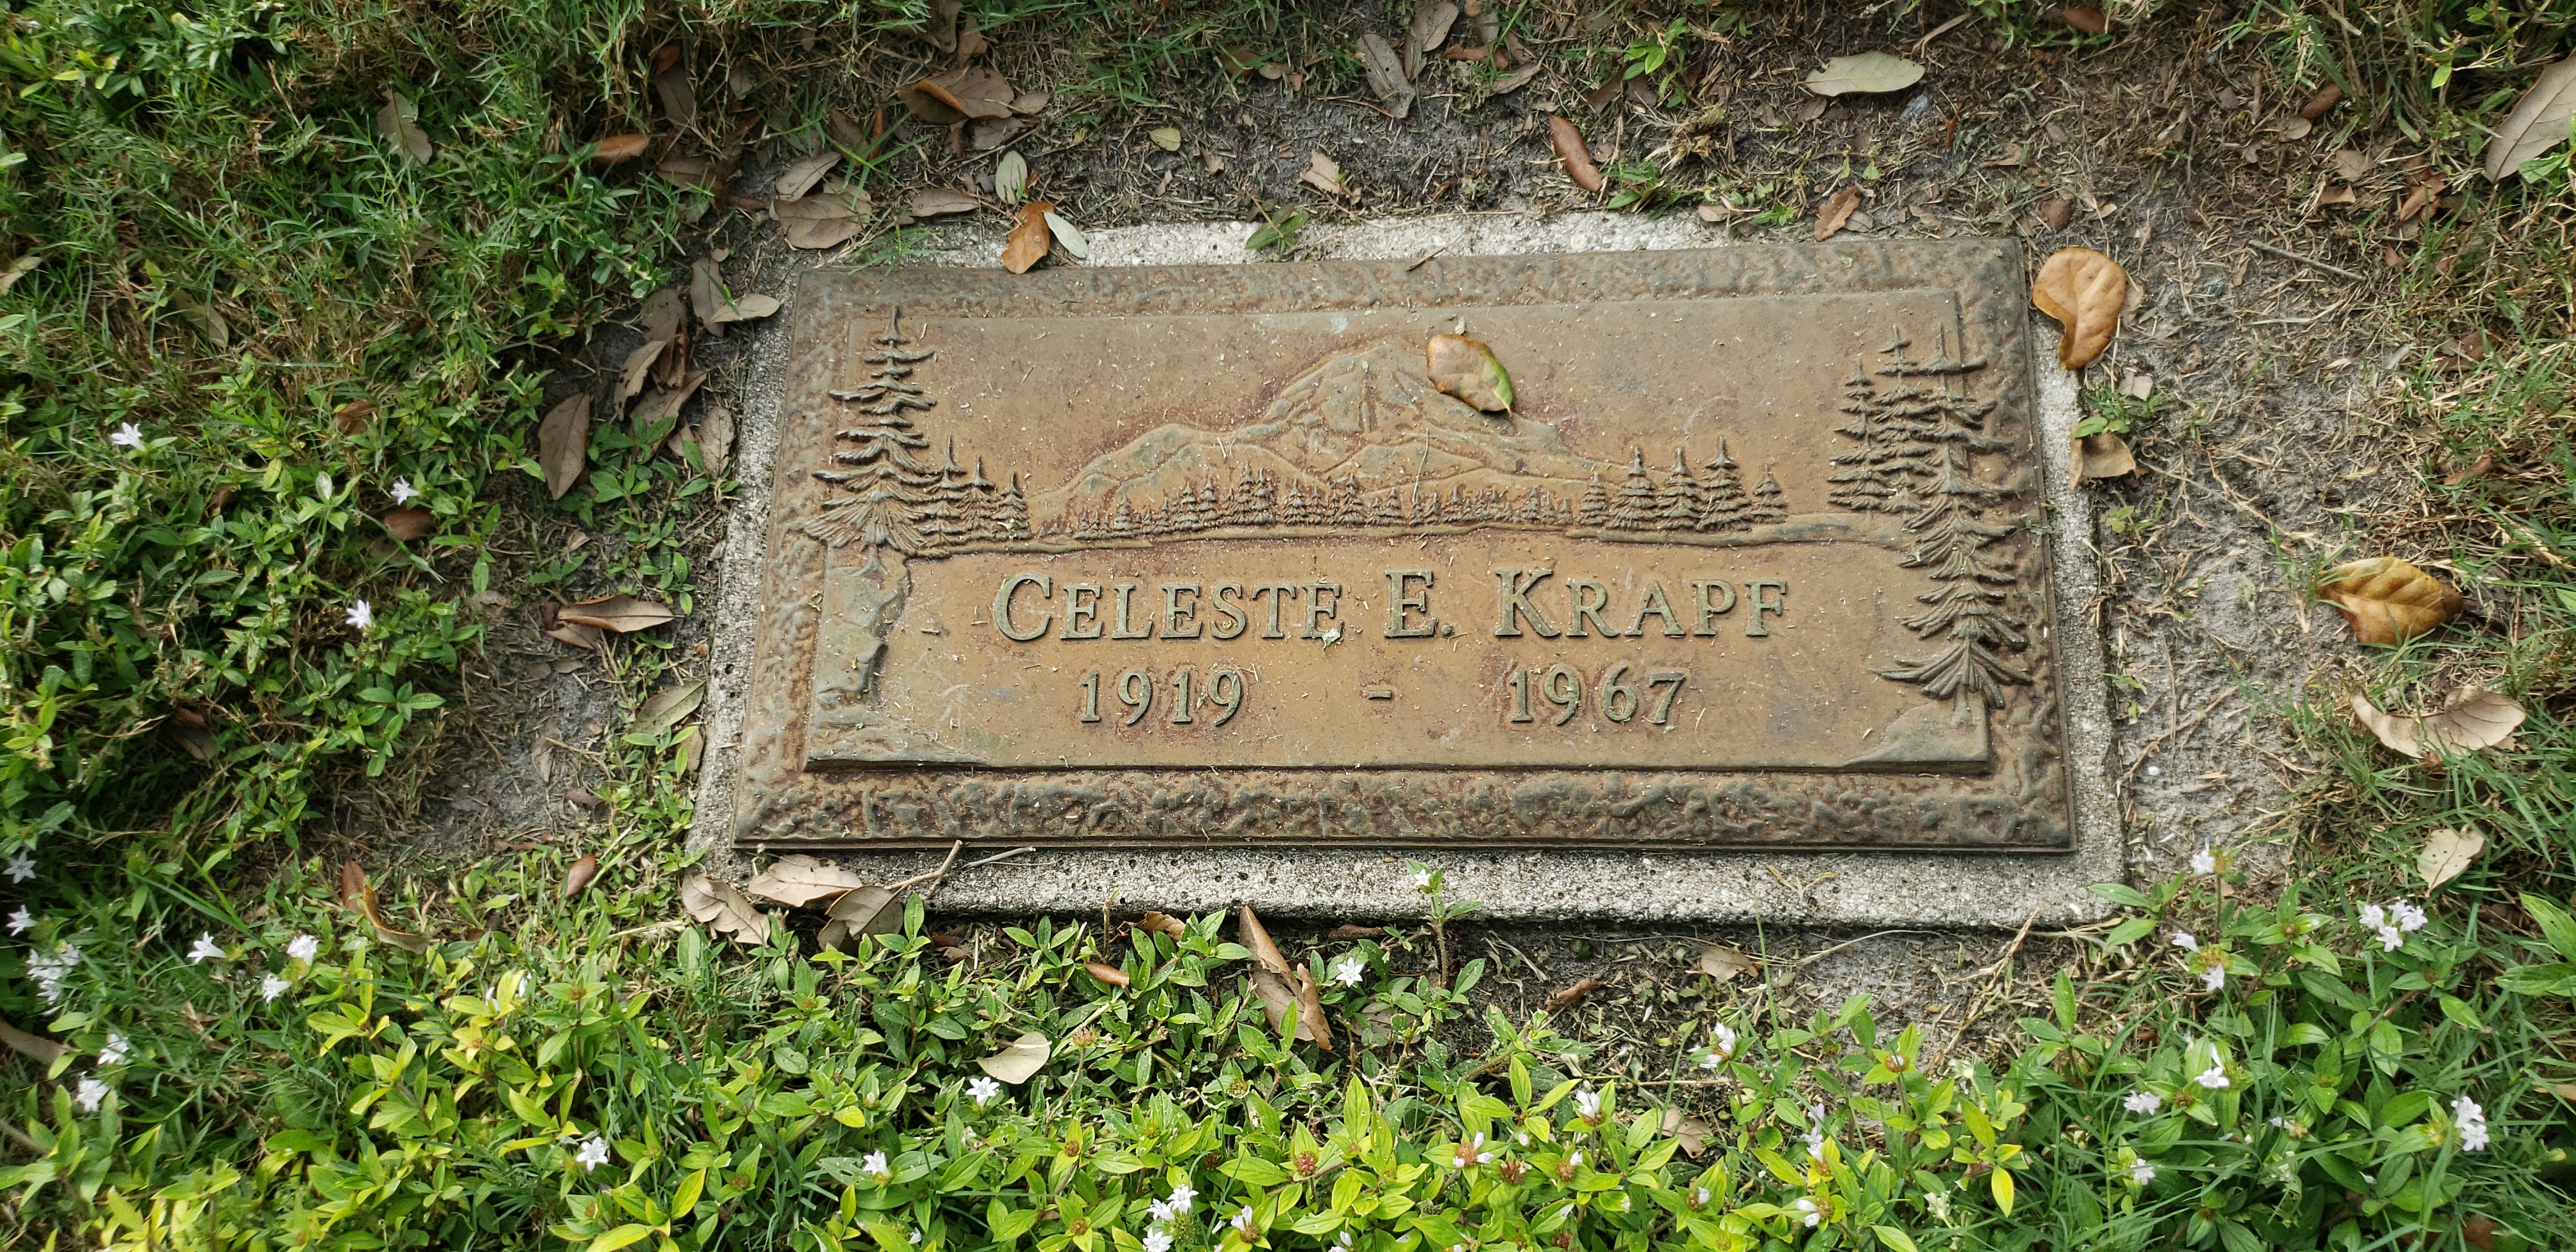 Celeste E Krapf